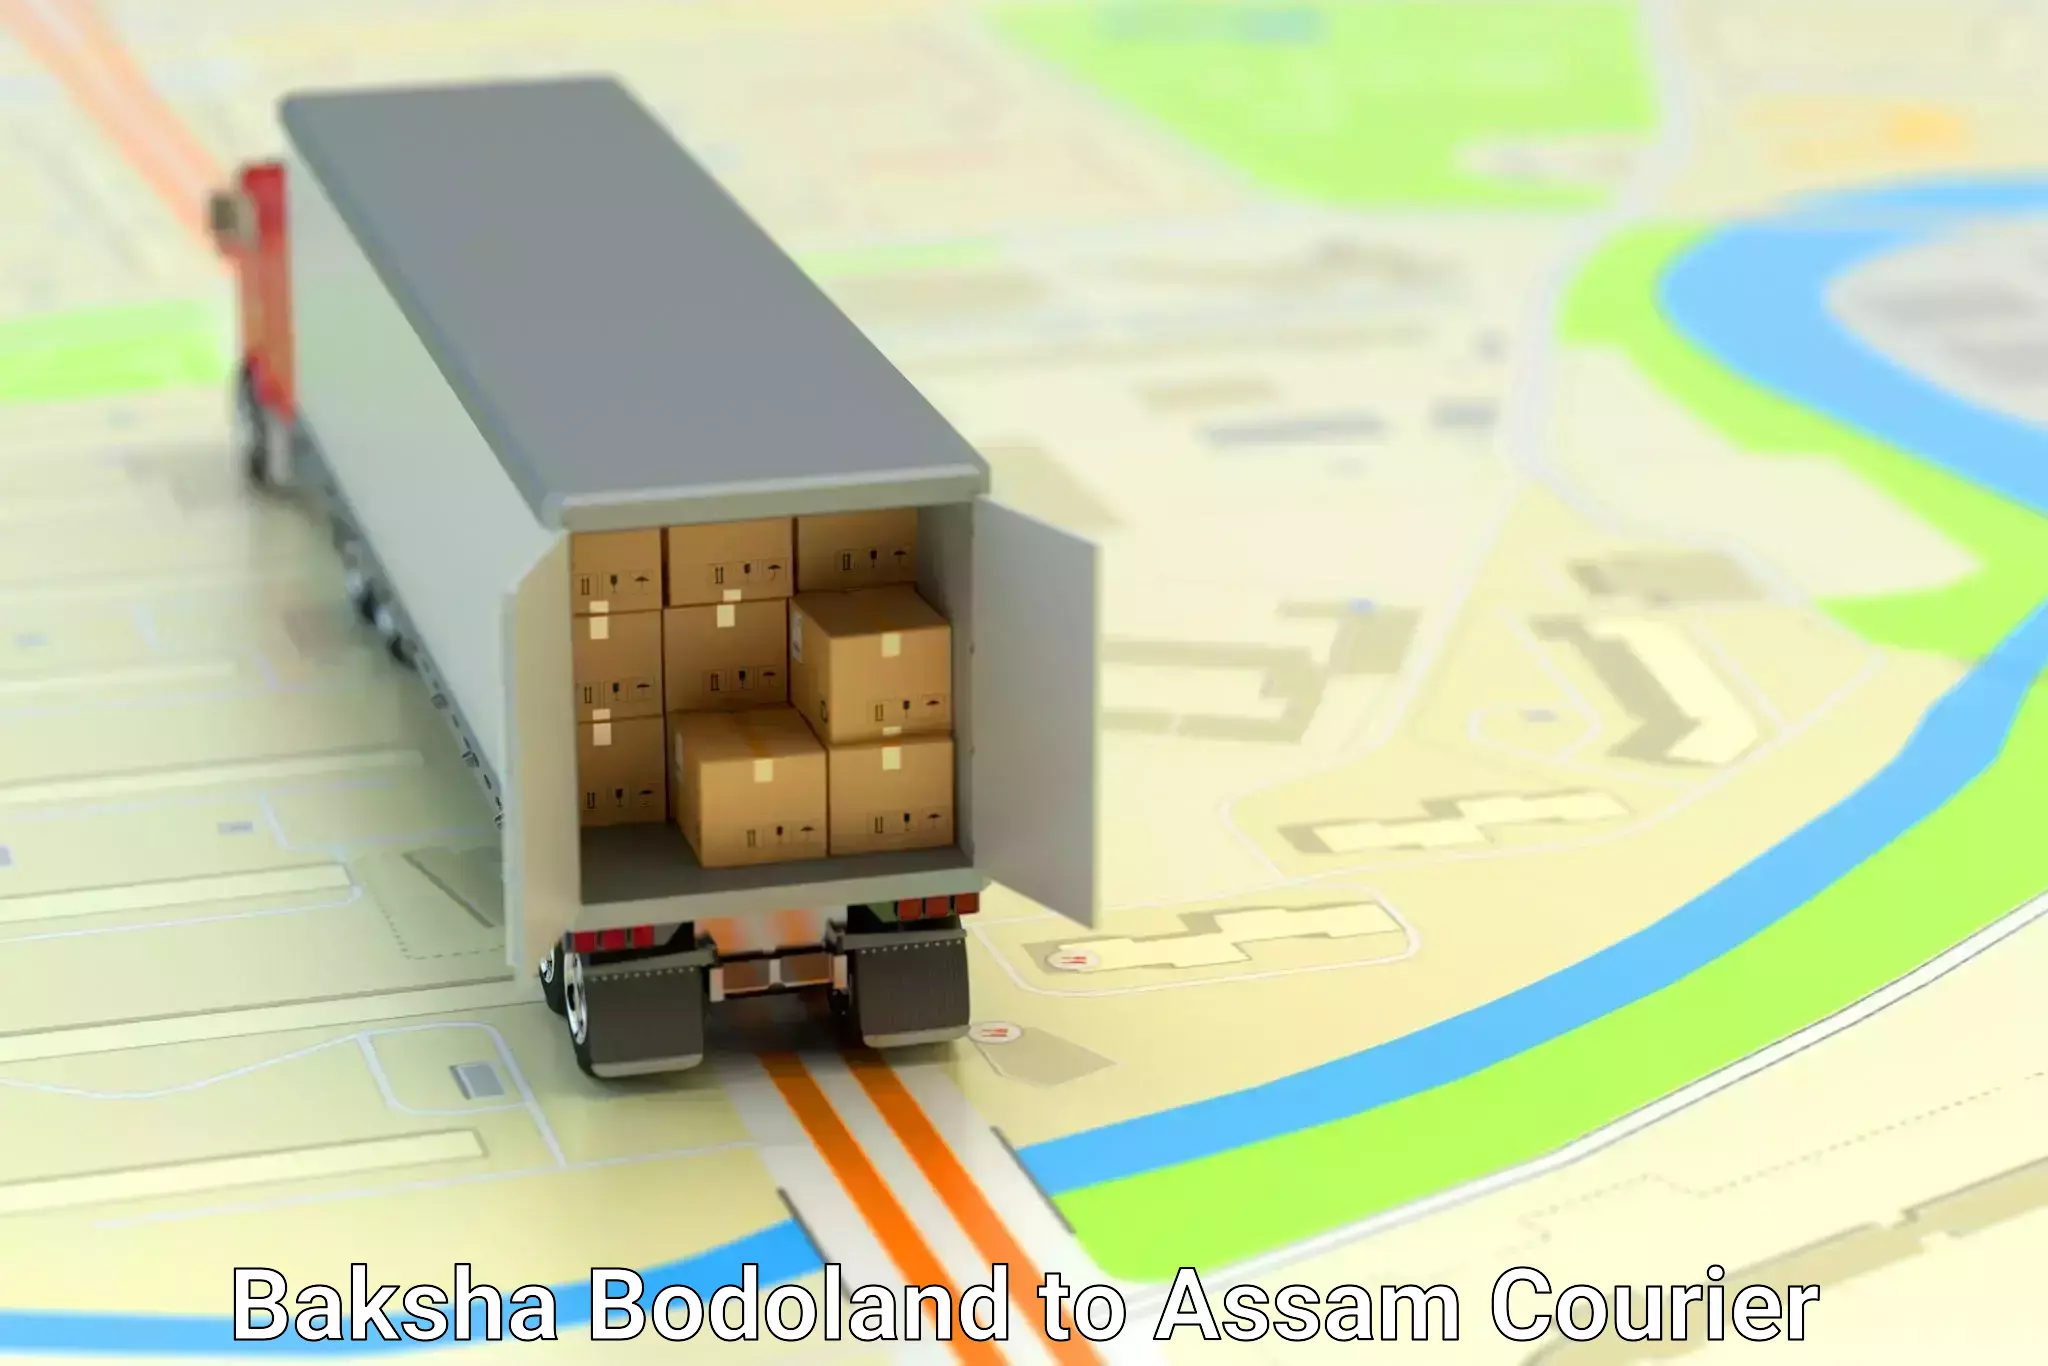 Express delivery network in Baksha Bodoland to Assam